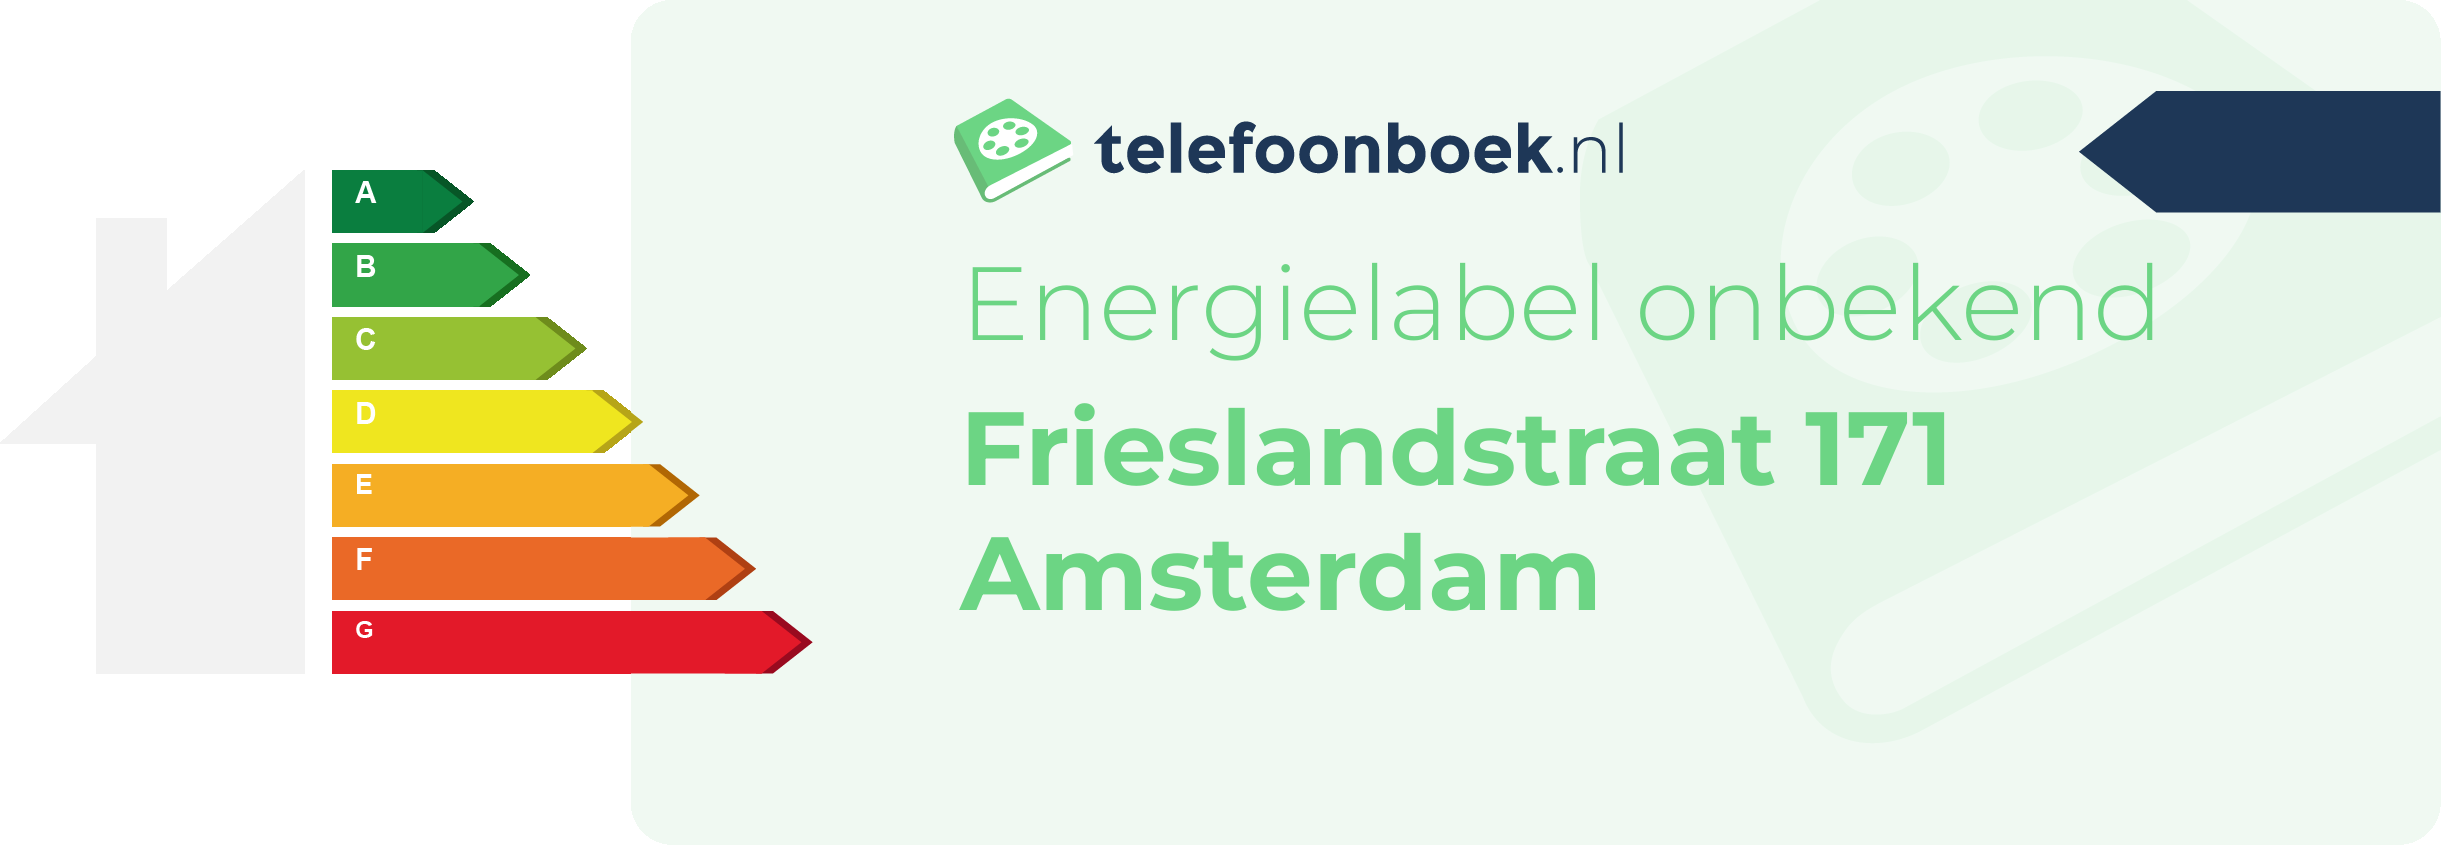 Energielabel Frieslandstraat 171 Amsterdam